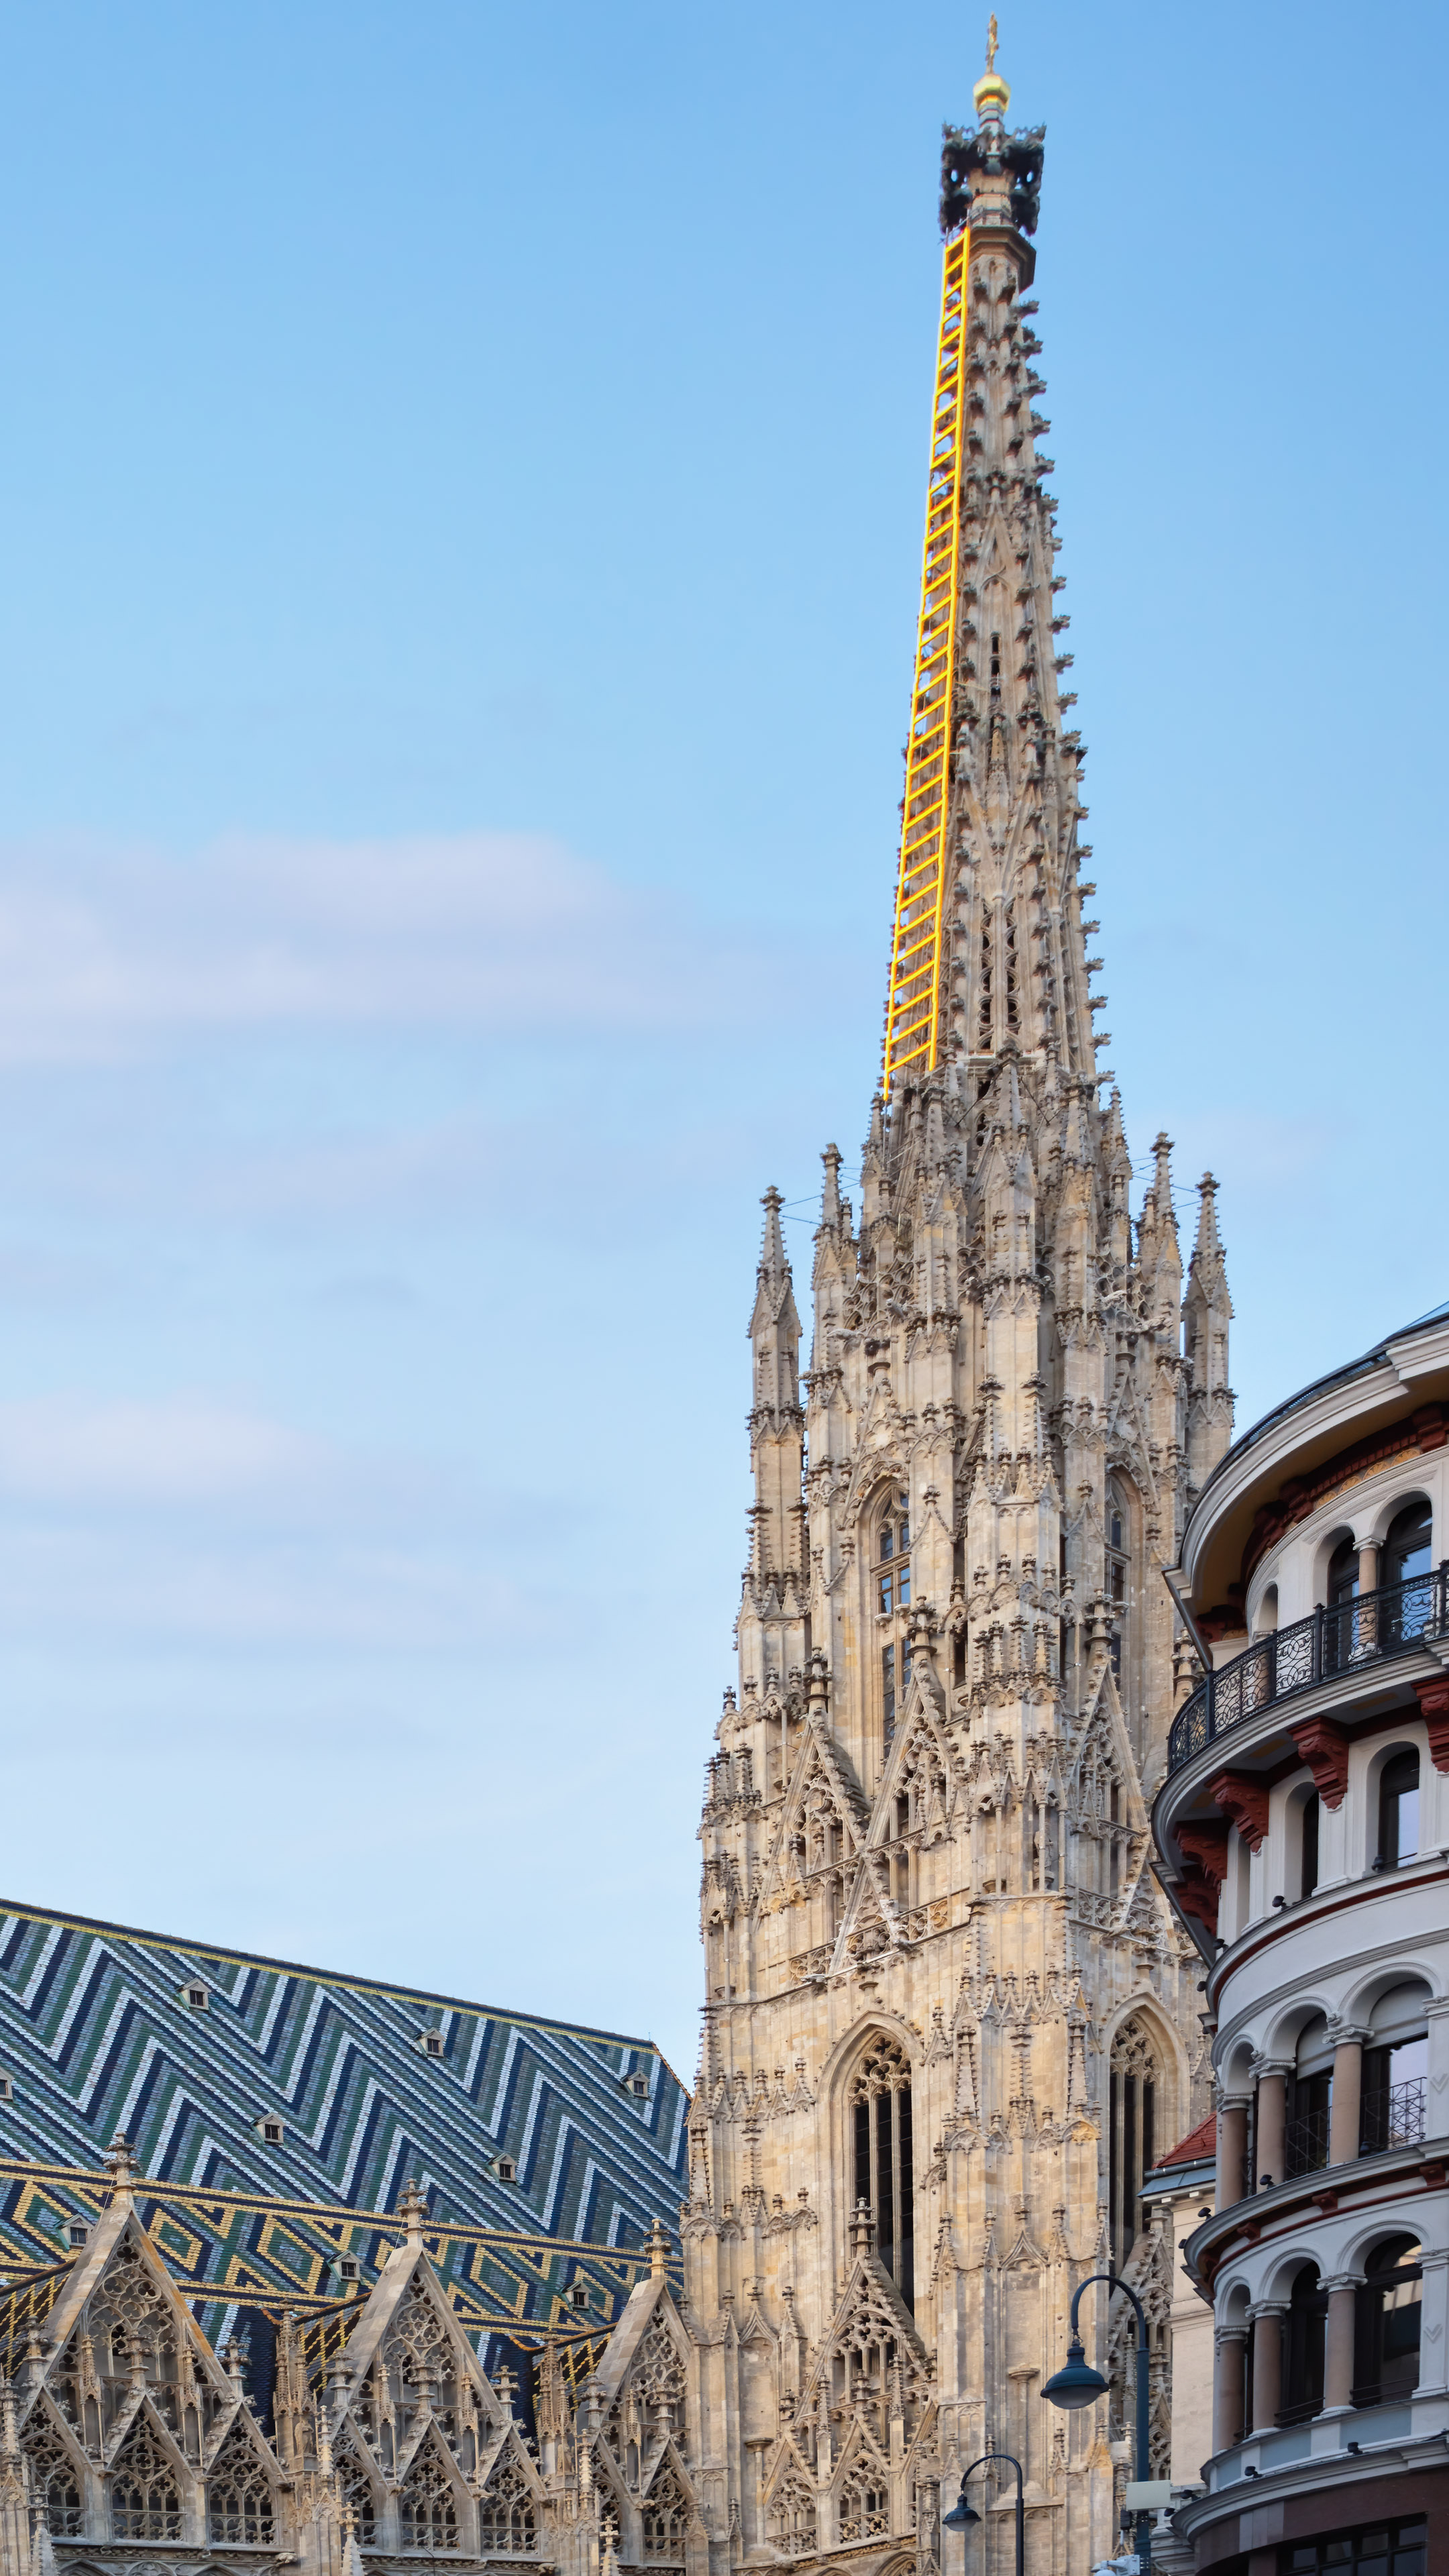 Fond d'écran de la ville de Vienne : Explorez l'élégance de la capitale de l'Autriche dans un paysage urbain fascinant pour votre iPhone.